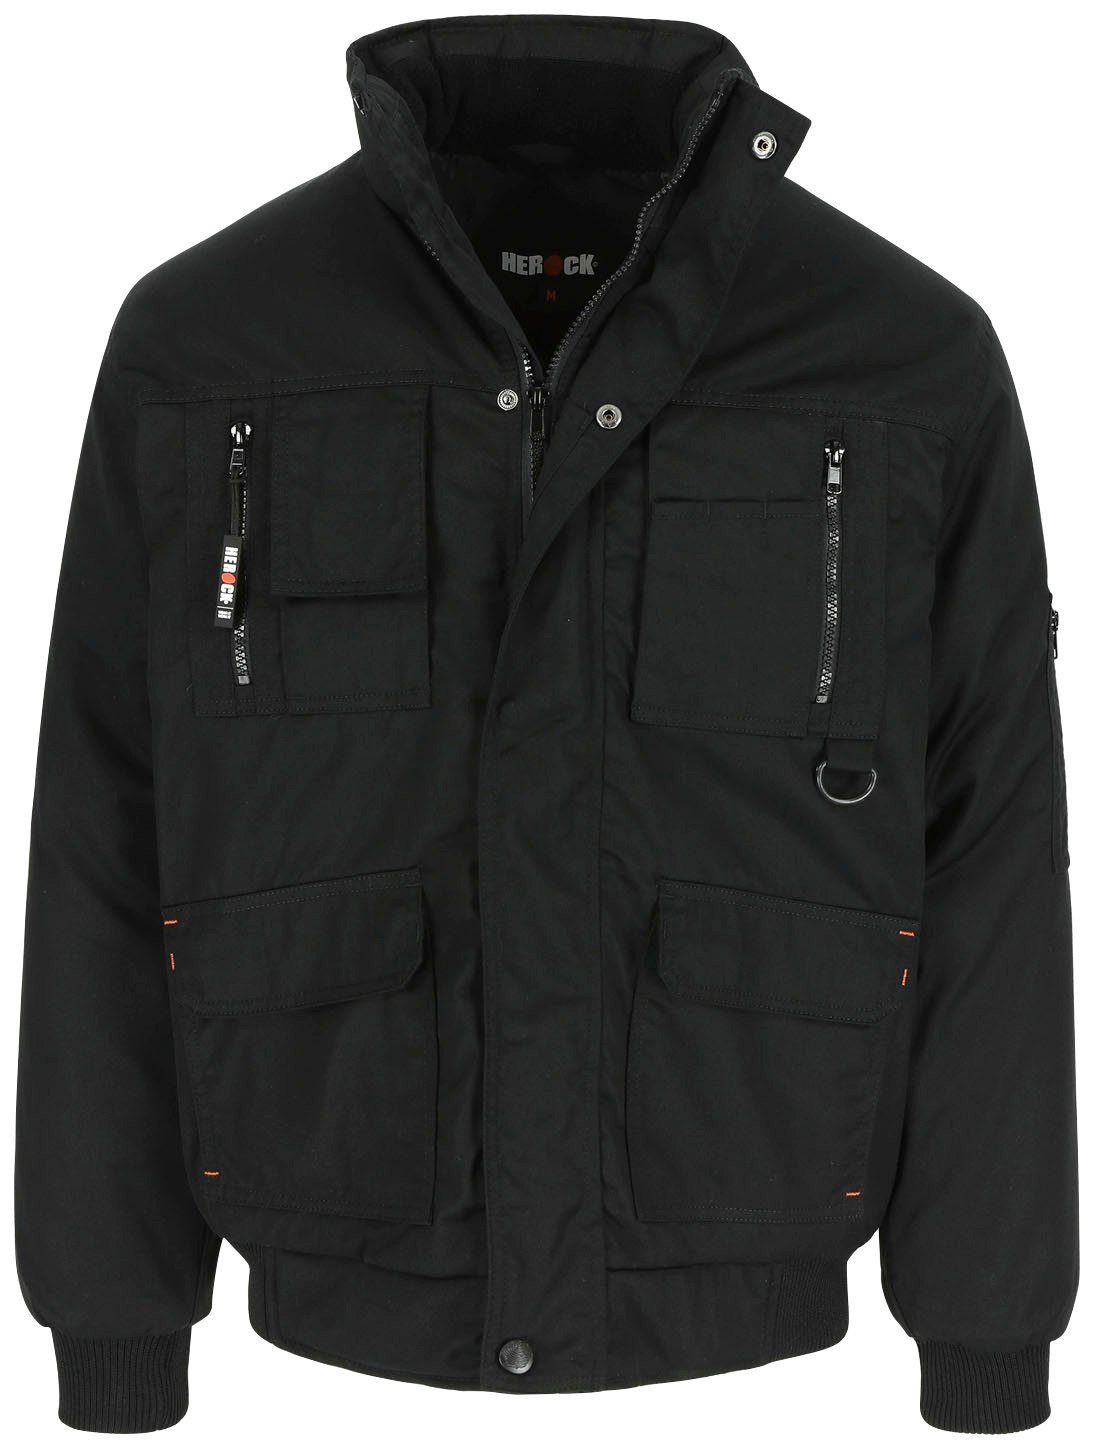 Herock Arbeitsjacke Typhon Jacke mit Fleece-Kragen, robust, viele Farben schwarz Taschen, viele Wasserabweisend